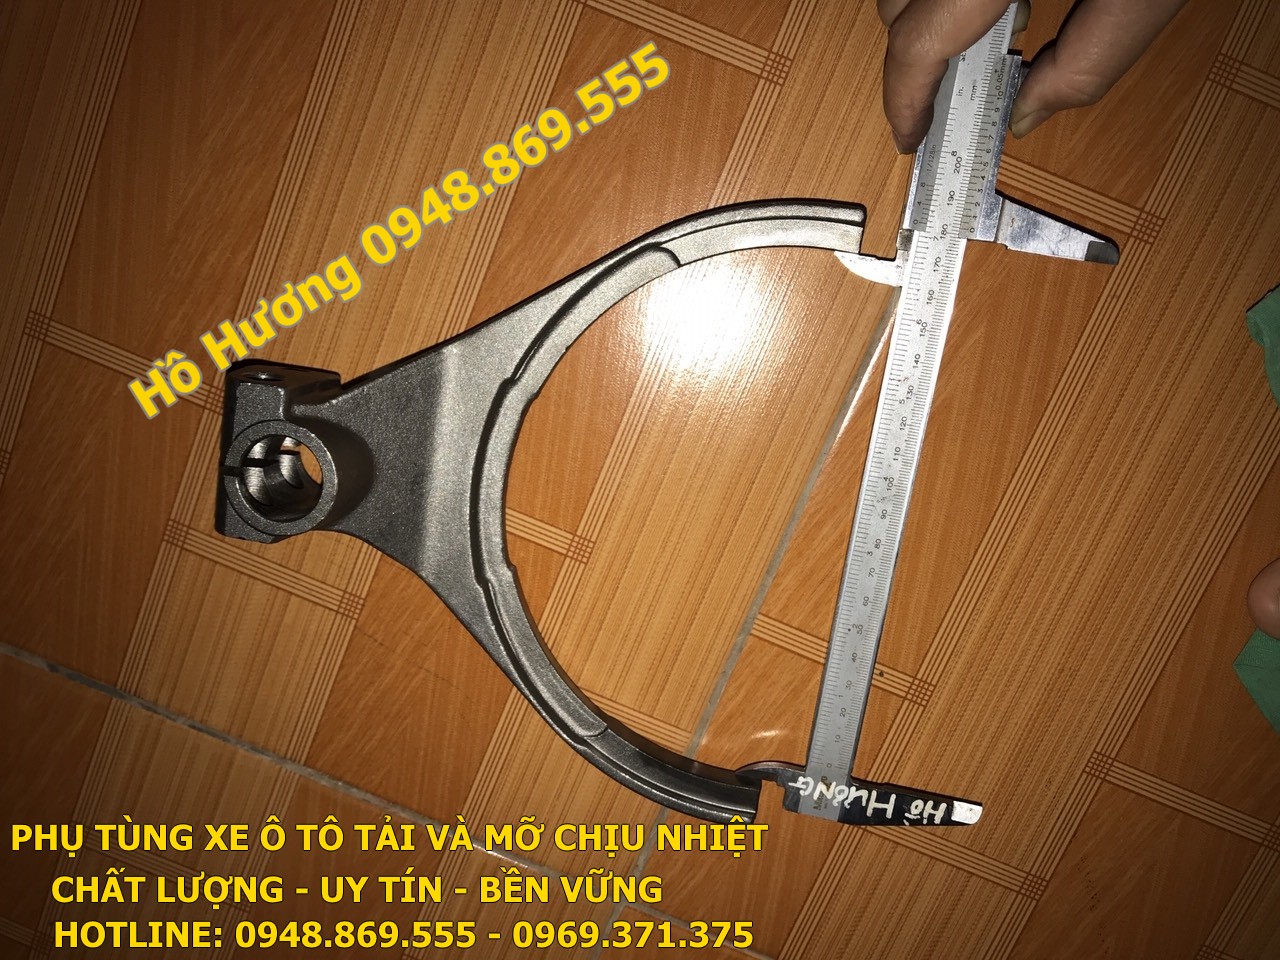 cang cua so phu hop so fast 9JS150T 16775 1 (1)